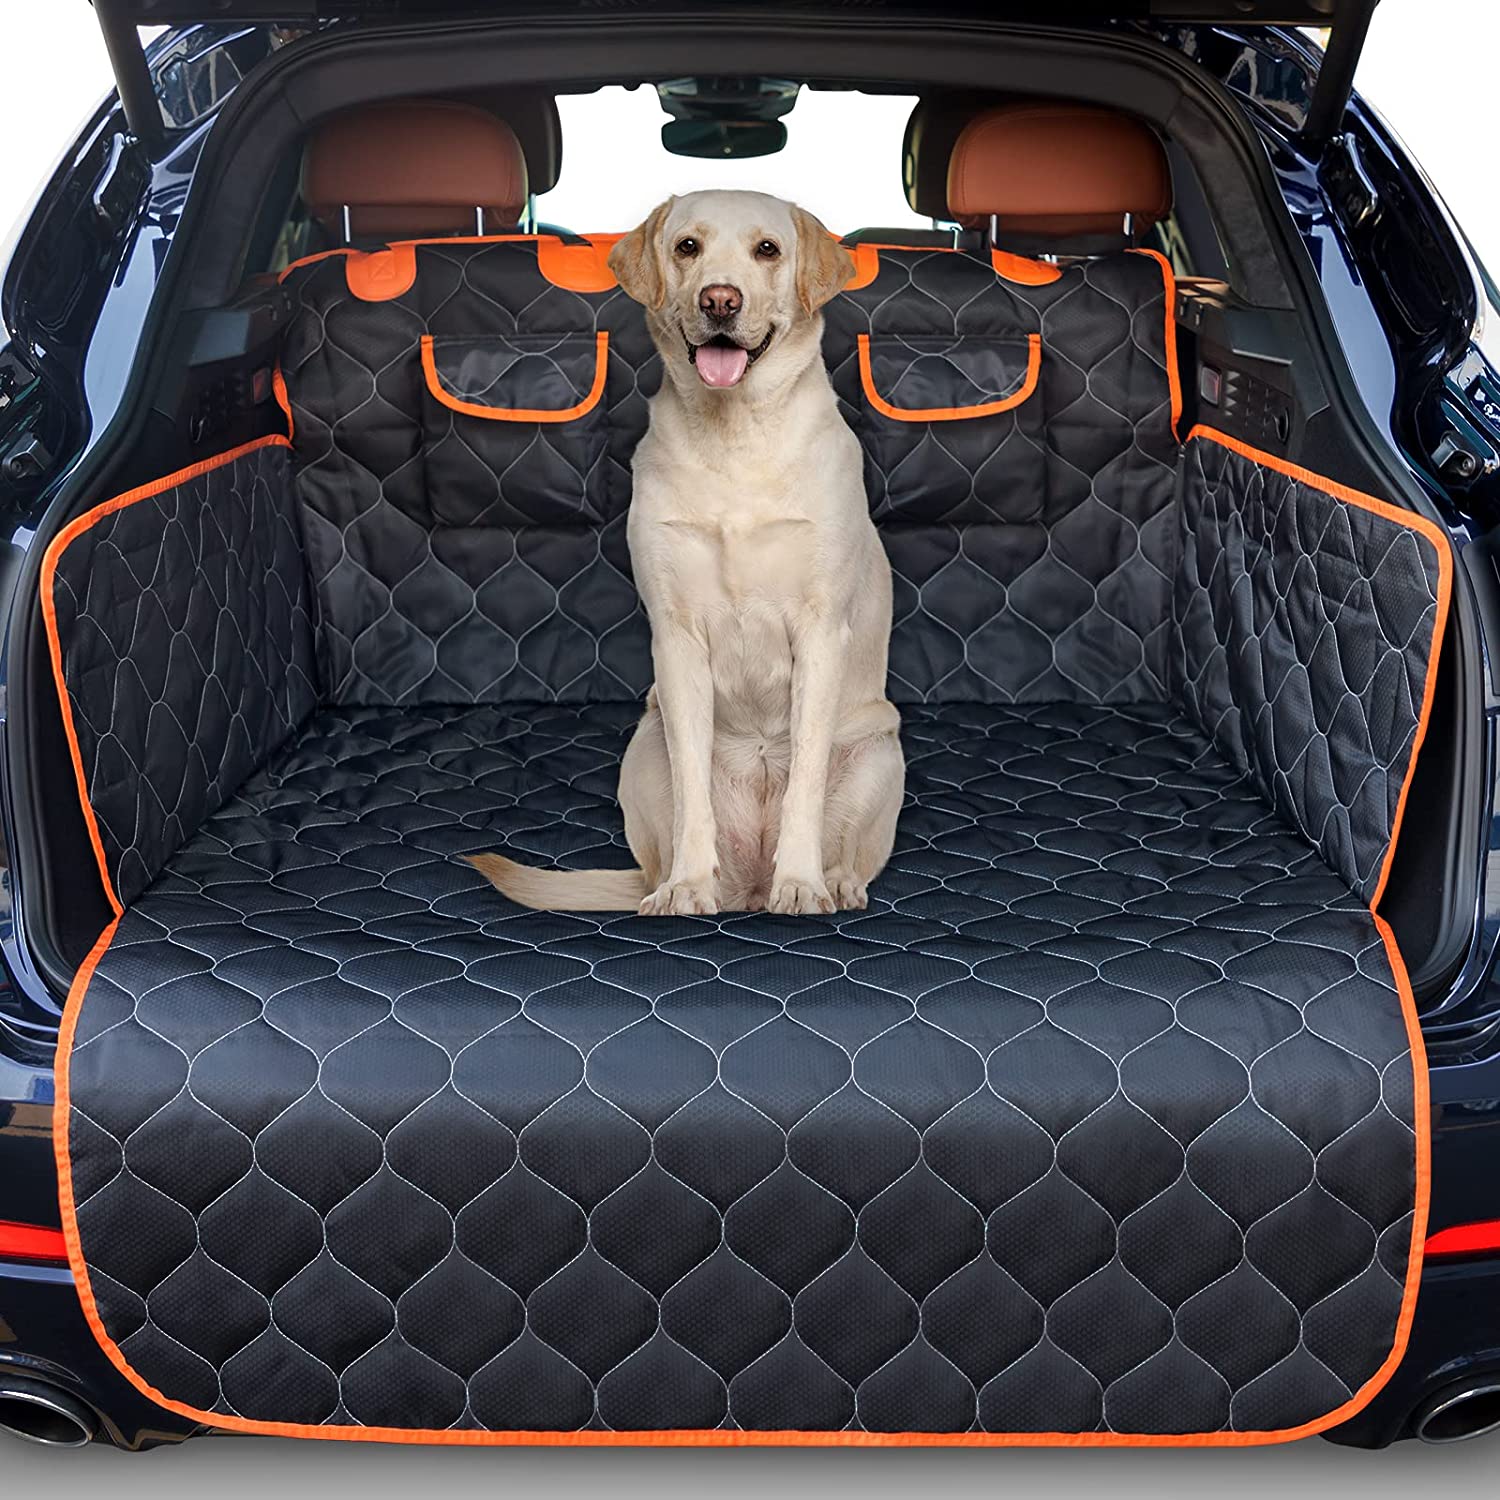 JOYJOE Kofferraumschutz für Hunde mit Seitenschutz, Universal Hundedecke  Kofferraum mit Stoßstangenschutz, rutschfeste, wasserdichte, kratzfeste  Kofferraumschutzmatte für Kombi, Van und SUV